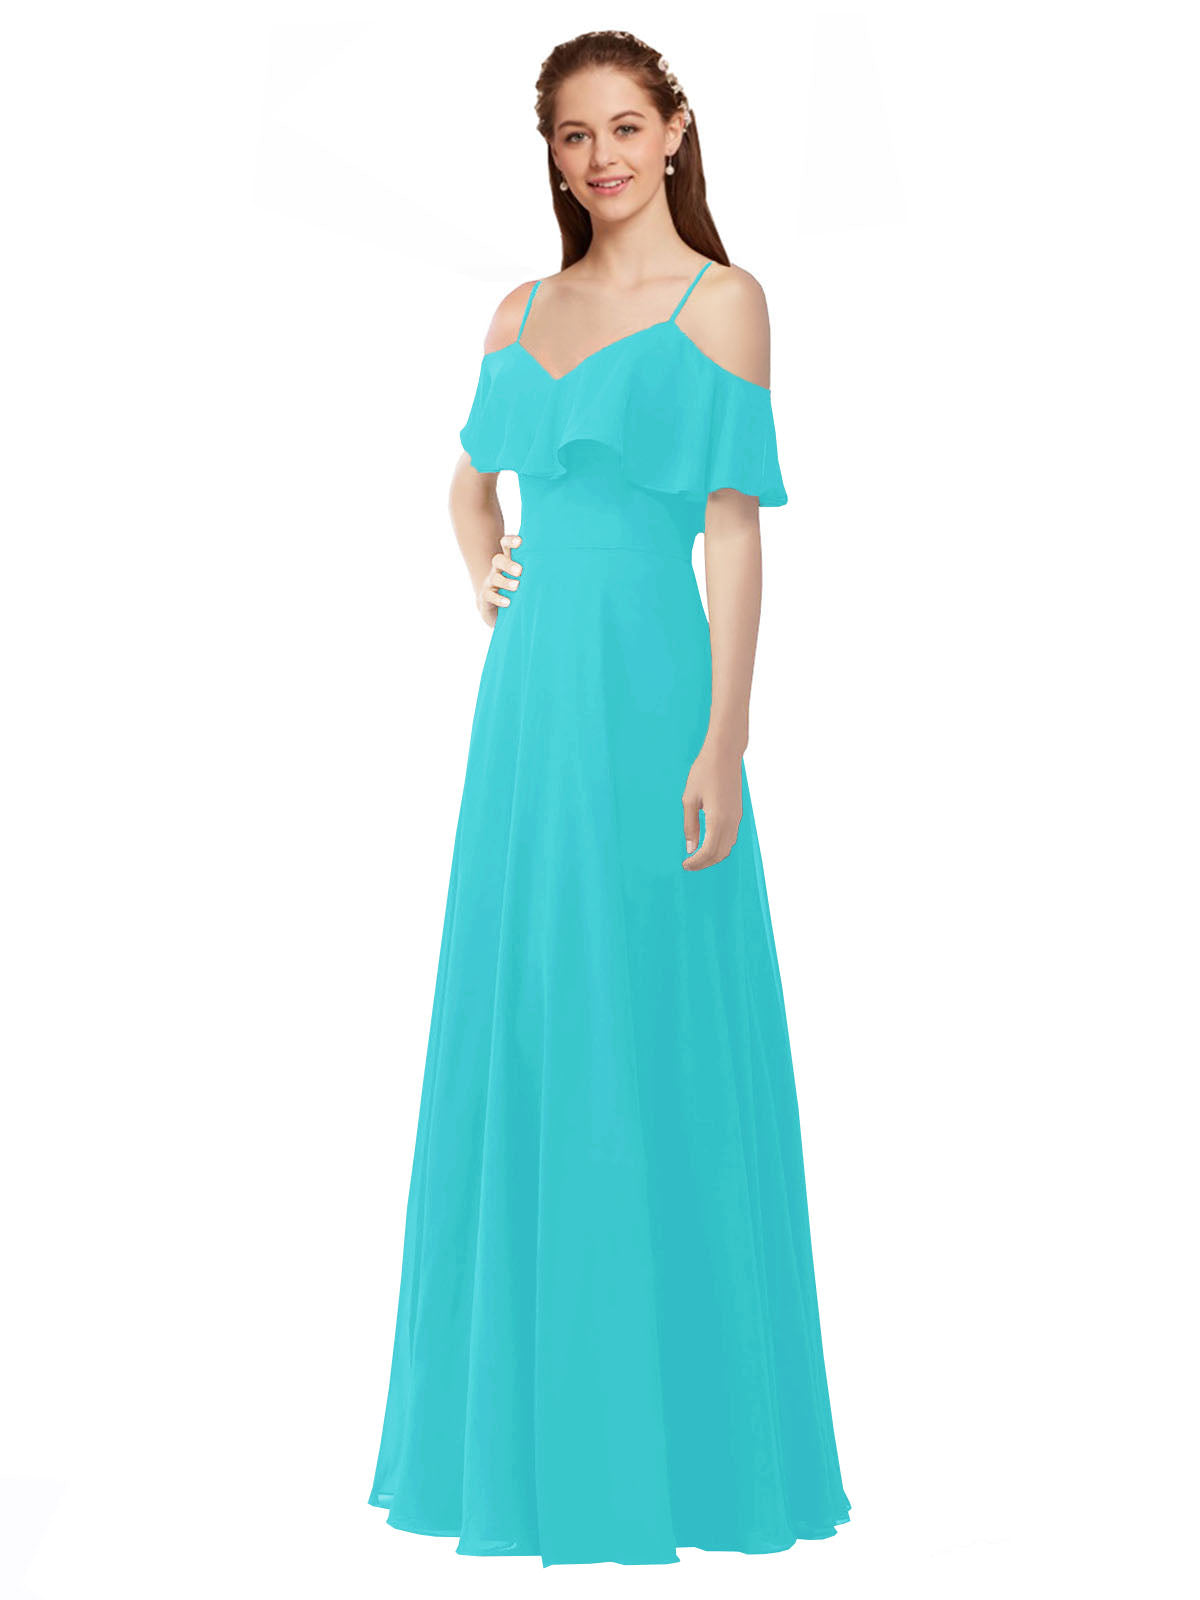 Aqua A-Line Off the Shoulder V-Neck Sleeveless Long Bridesmaid Dress Marianna